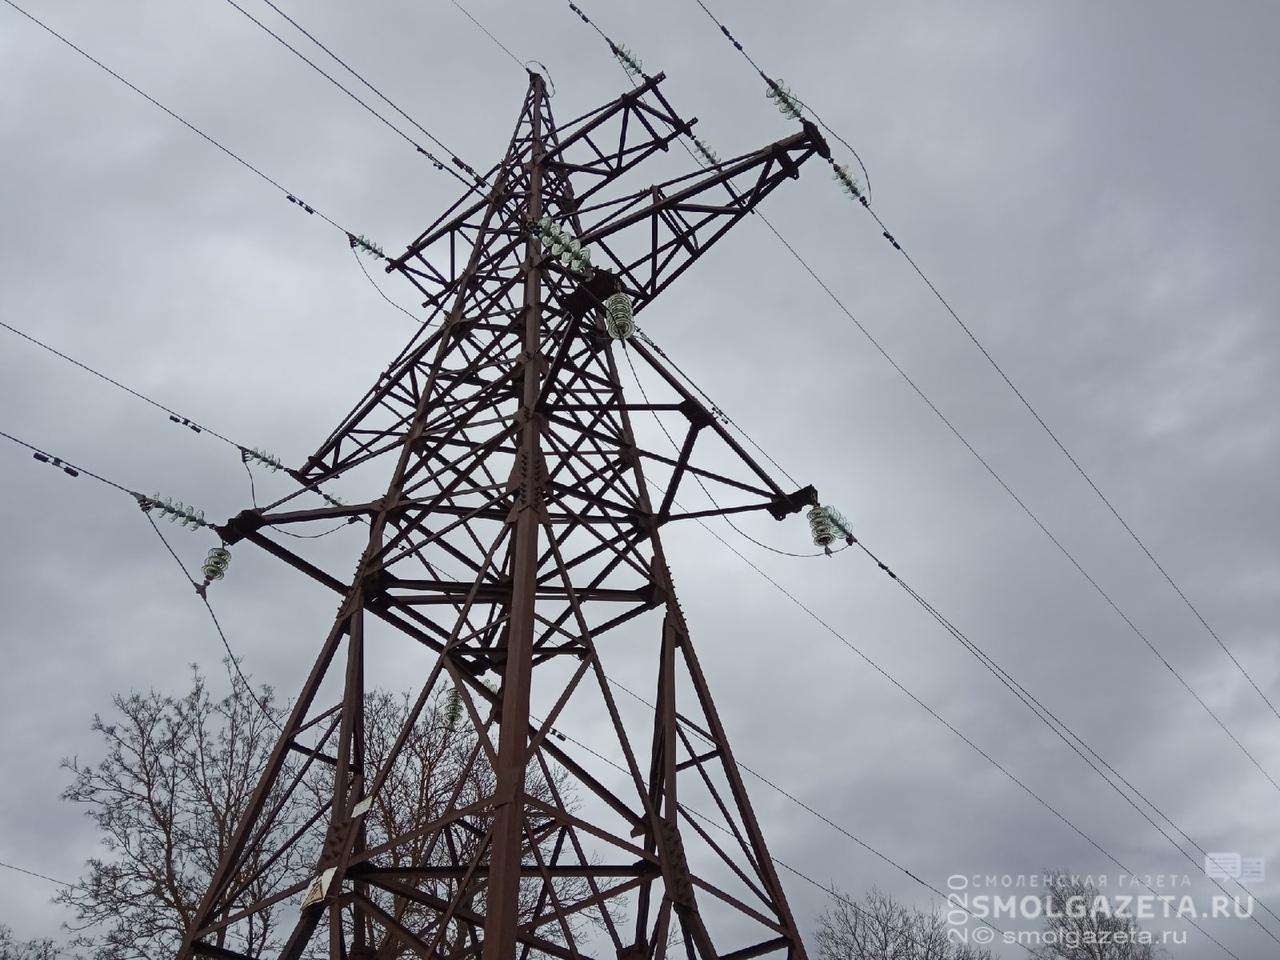 Почти тысяча человек в Гагаринском районе осталась без электричества